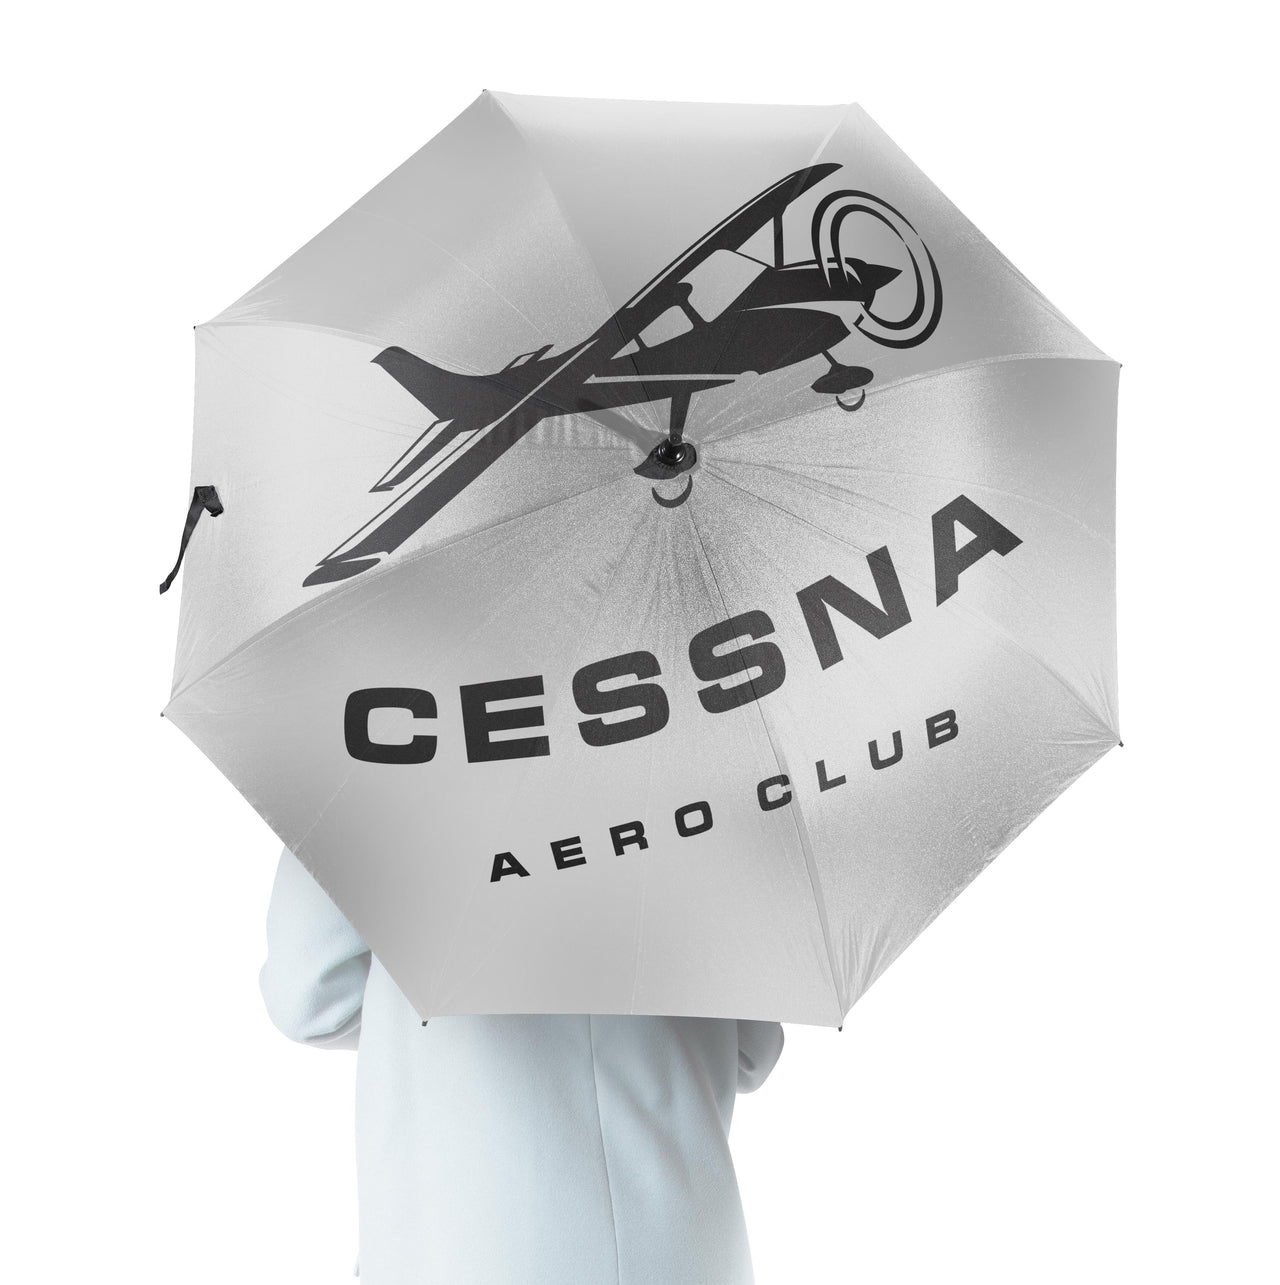 Cessna Aeroclub Designed Umbrella